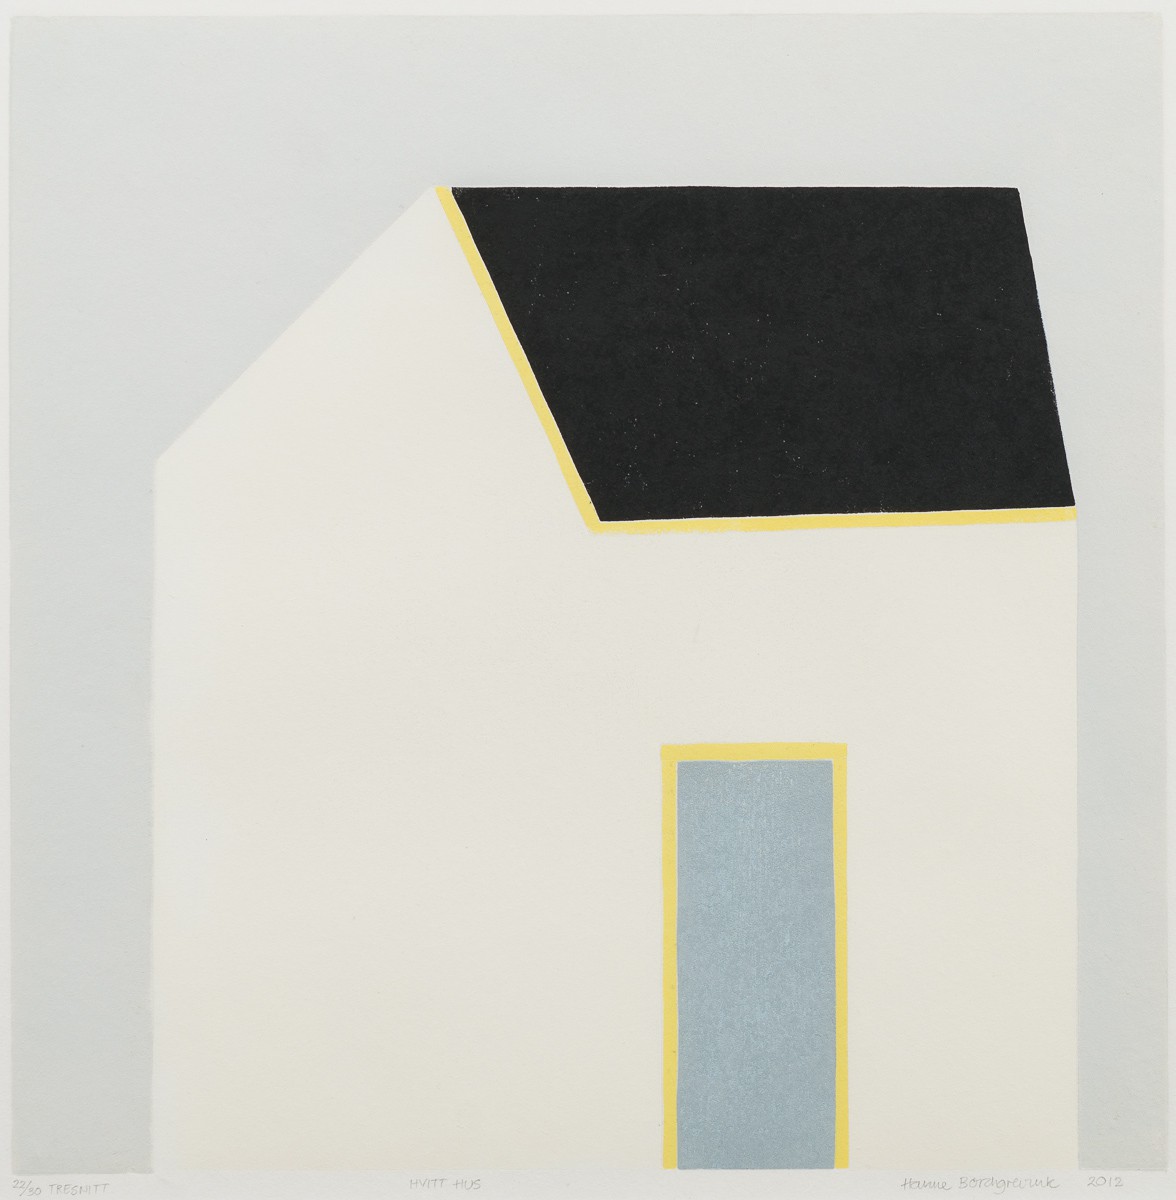 17.	Hvitt hus (2012) — Hanne Borchgrevink